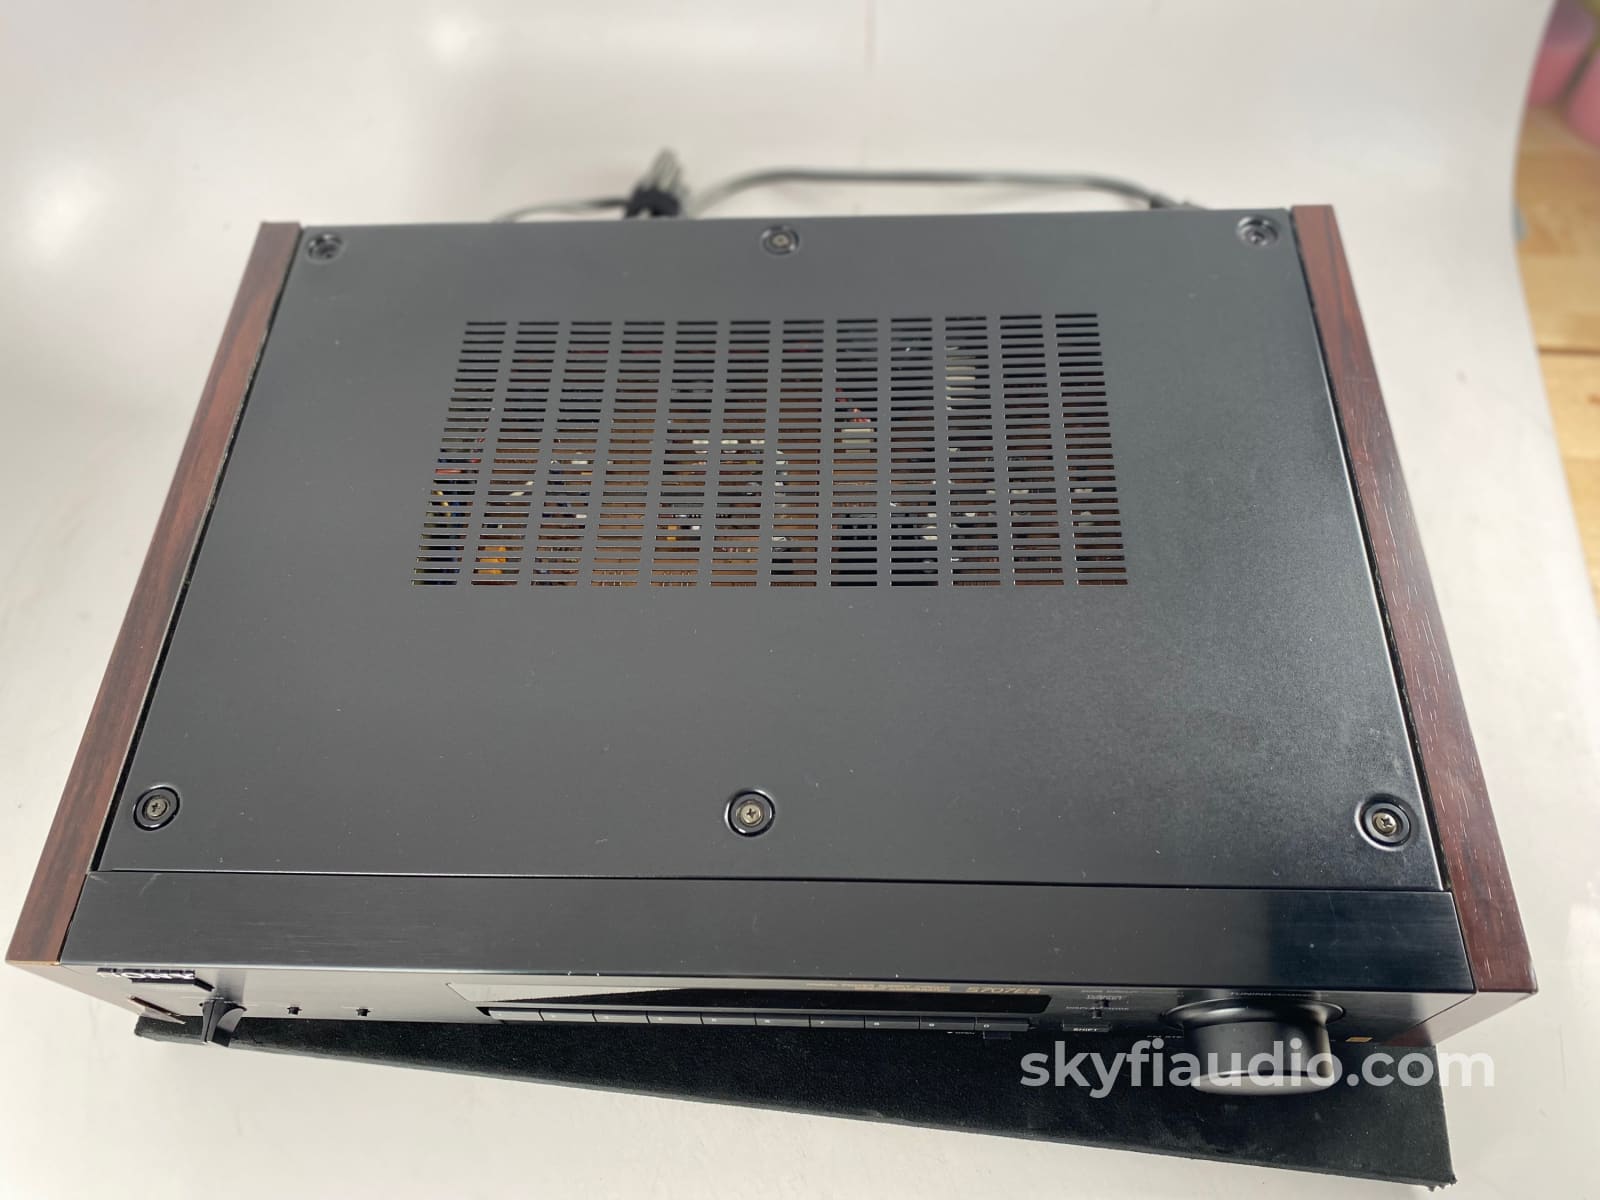 Sony St-S707Es Vintage Es Series Am/Fm Tuner